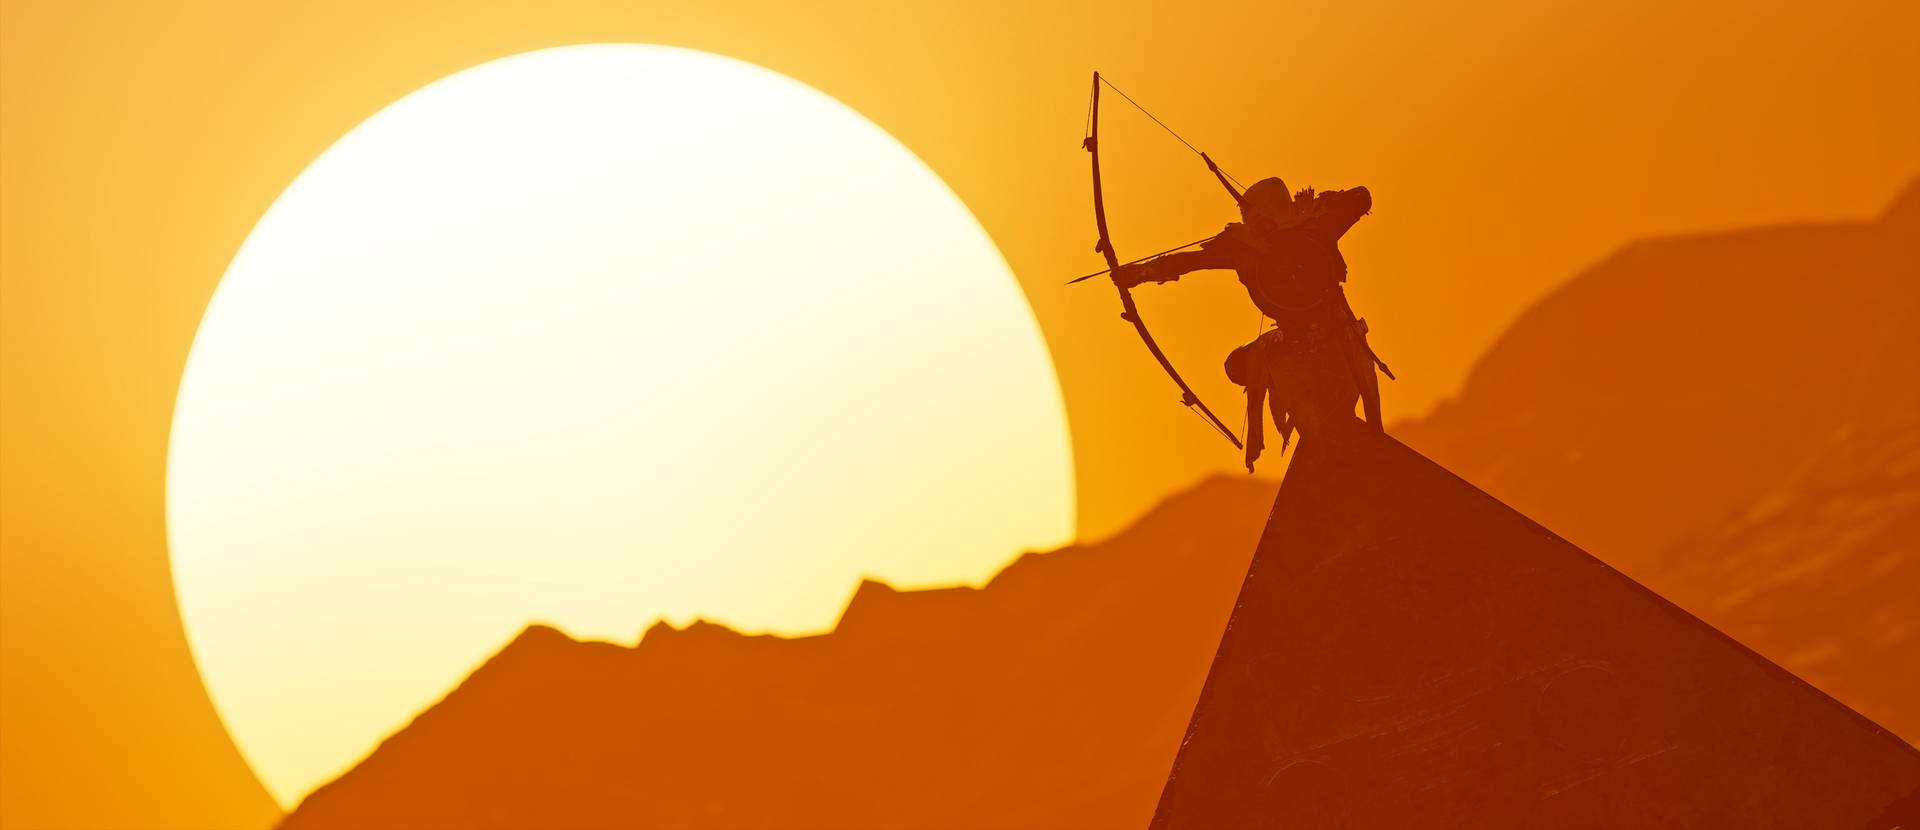 Assassins Creed Origins Bayek Firing Arrow Background